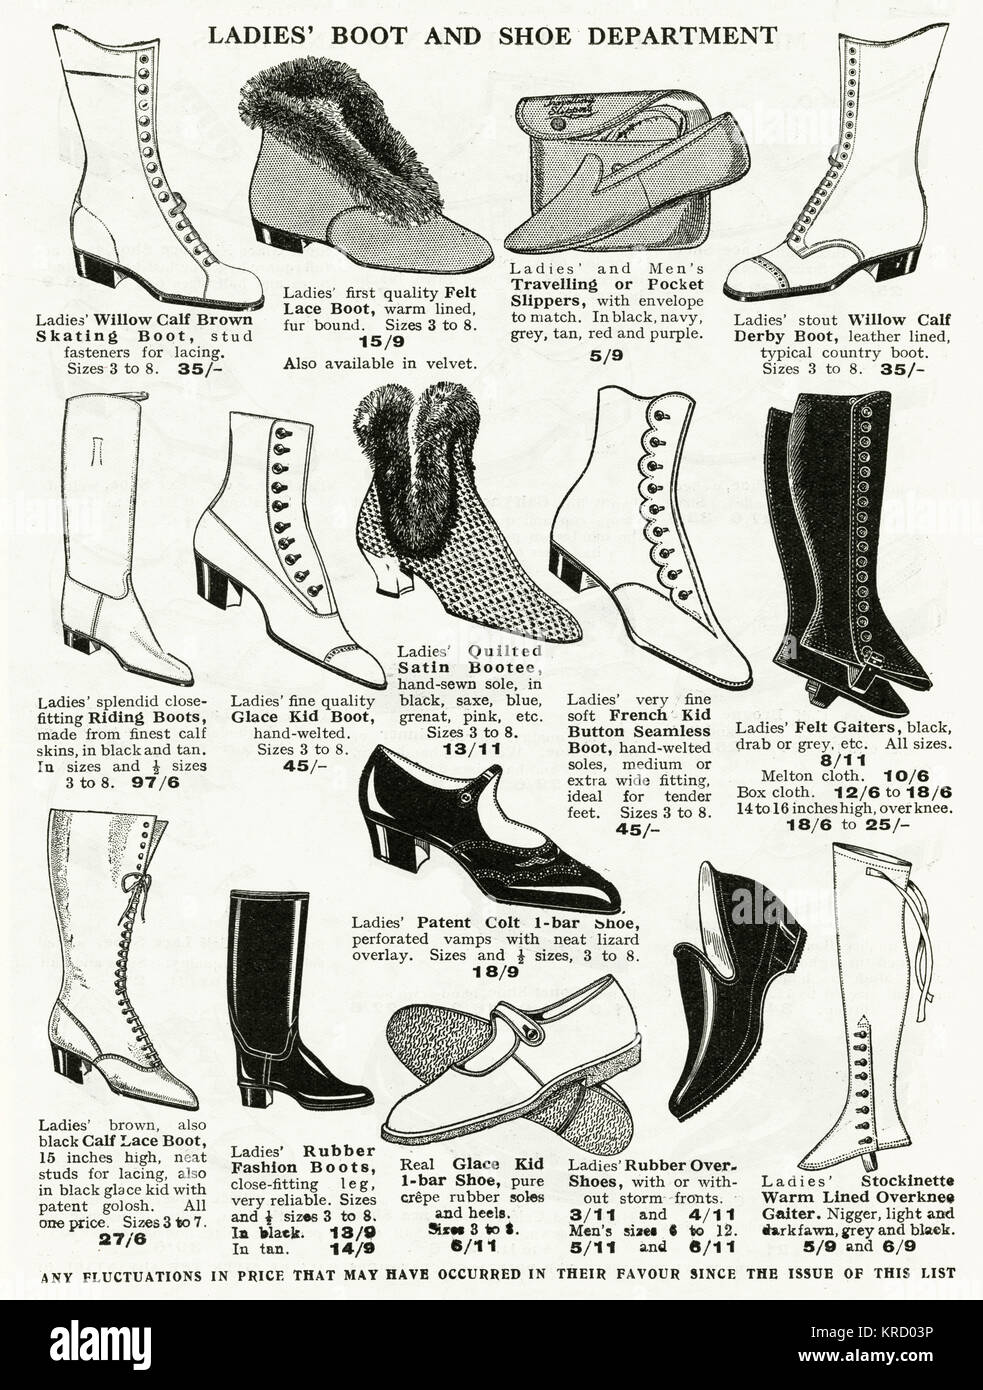 ladies boots price